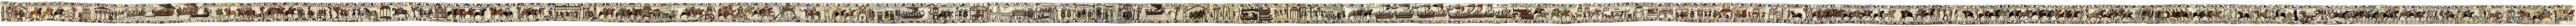 Teoreetikot kiistelevät siitä, onko Bayeux'n tapetti sarjakuvan esiaste.  